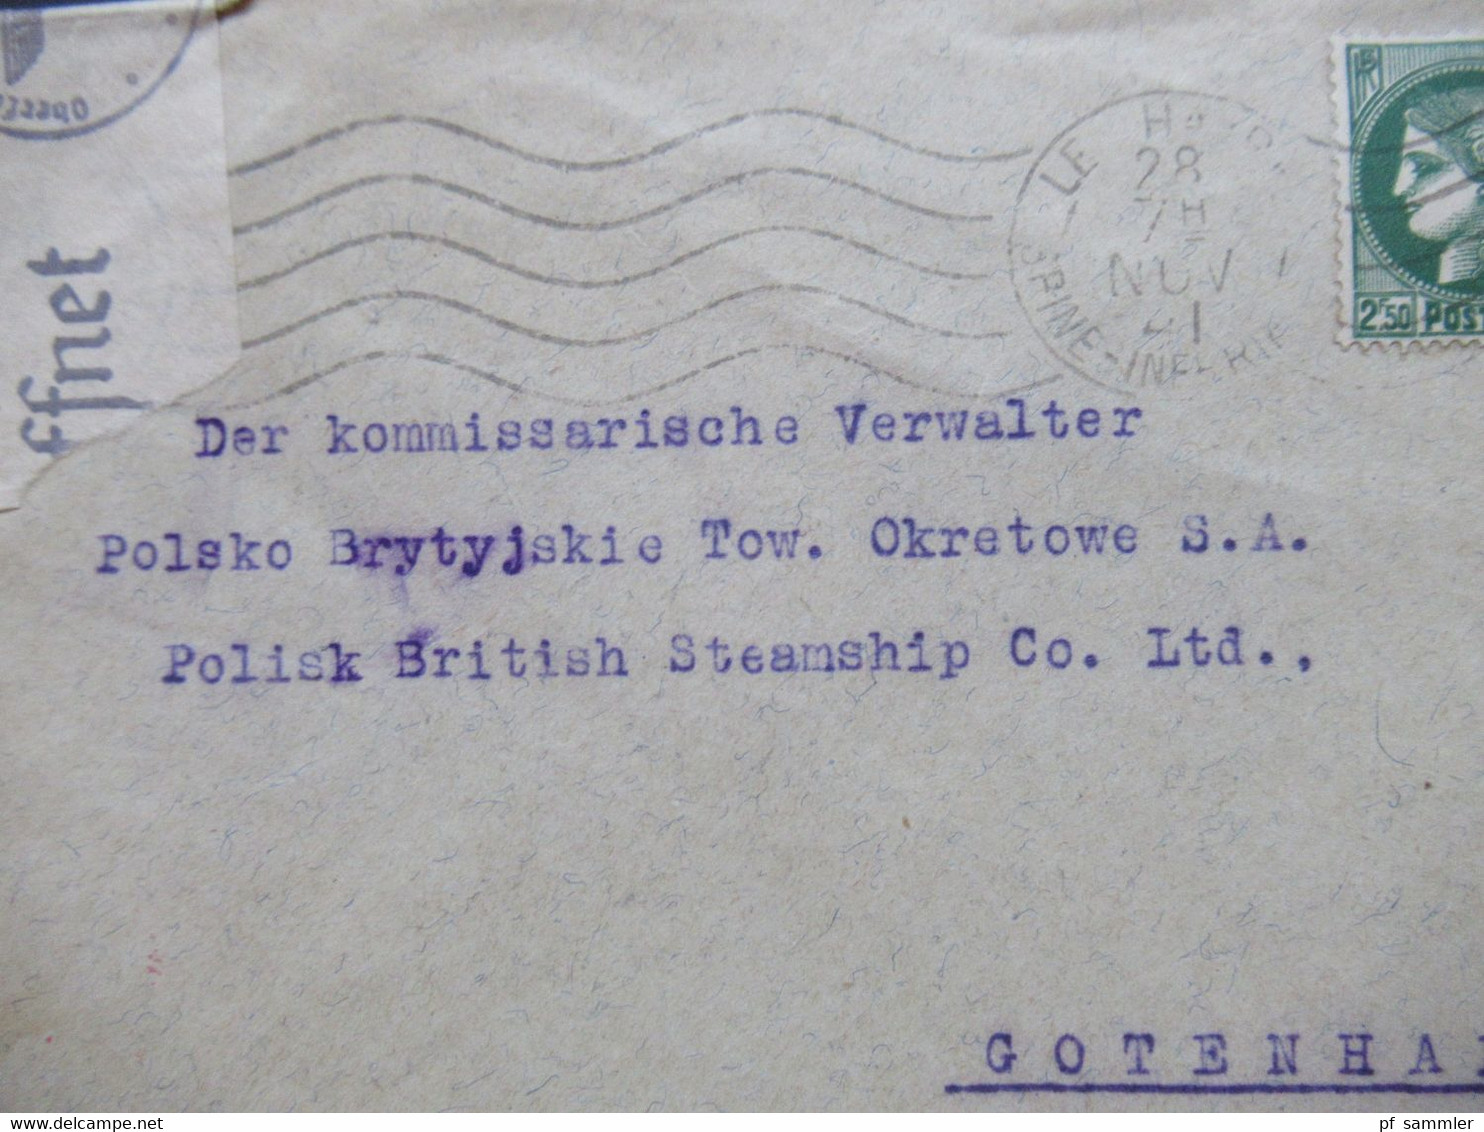 1941 OKW Zensur Langstaff, Erembert Havre An Den Komissarischen Verwalter Polisk British Steamship Gotenhafen / Gdynia - Lettres & Documents